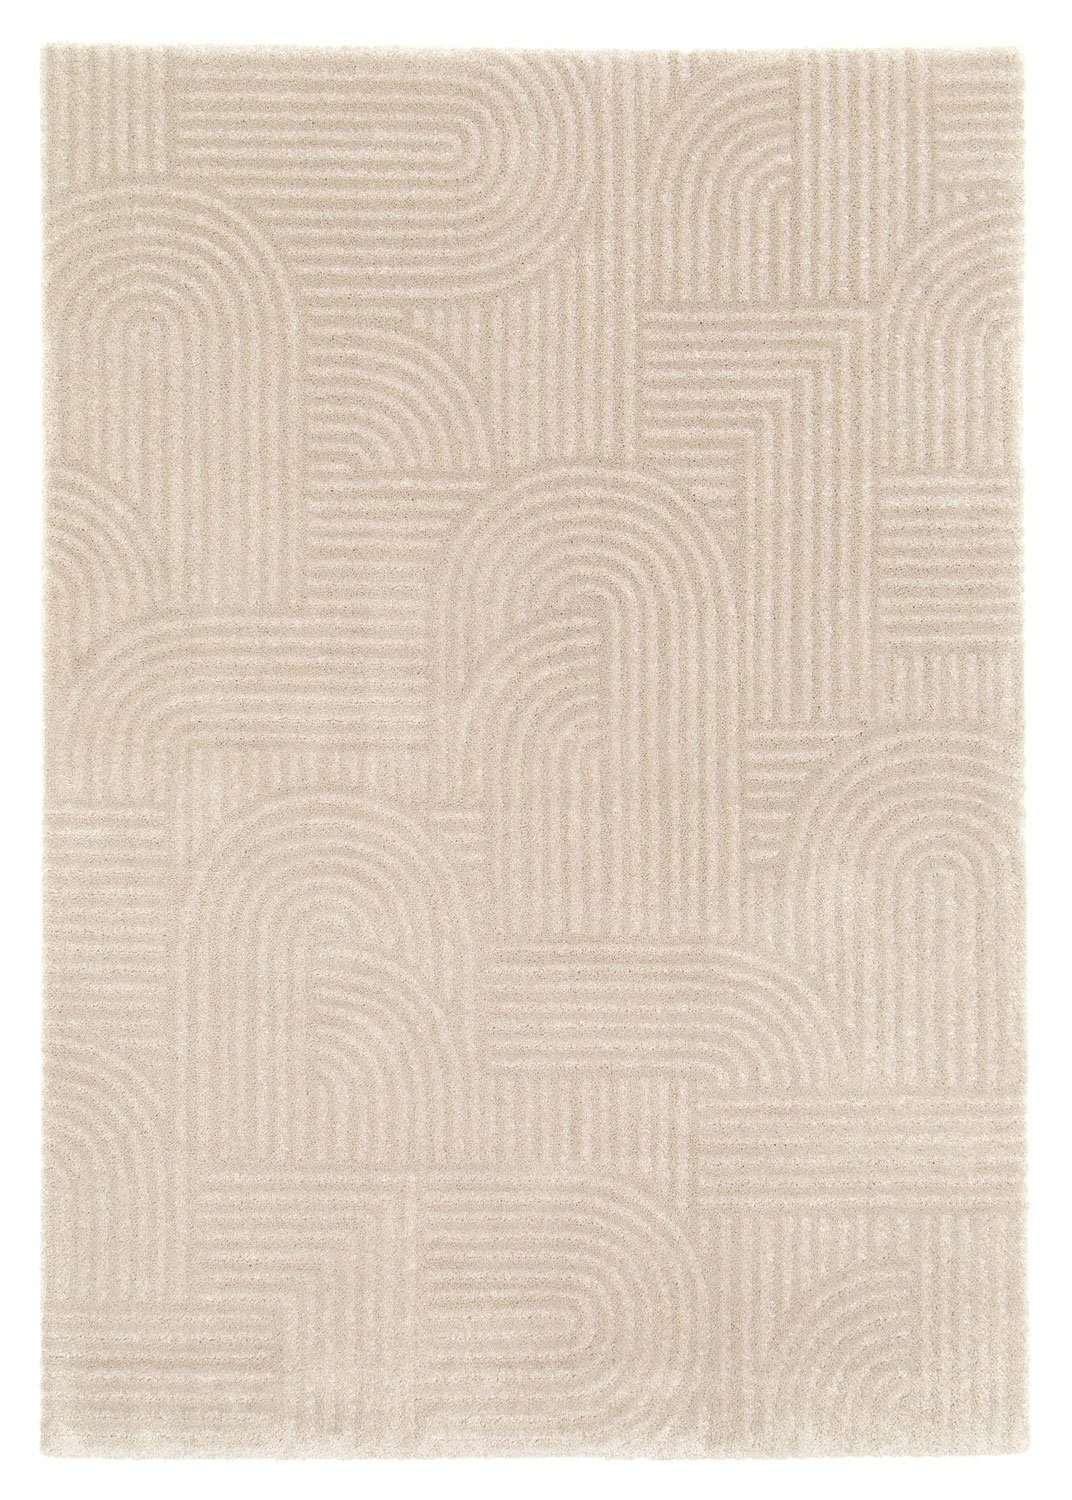 Teppich MOON, Polypropylen, Beige, 80 x 150 cm, Gemustert, Balta Rugs, rechteckig, Höhe: 17 mm